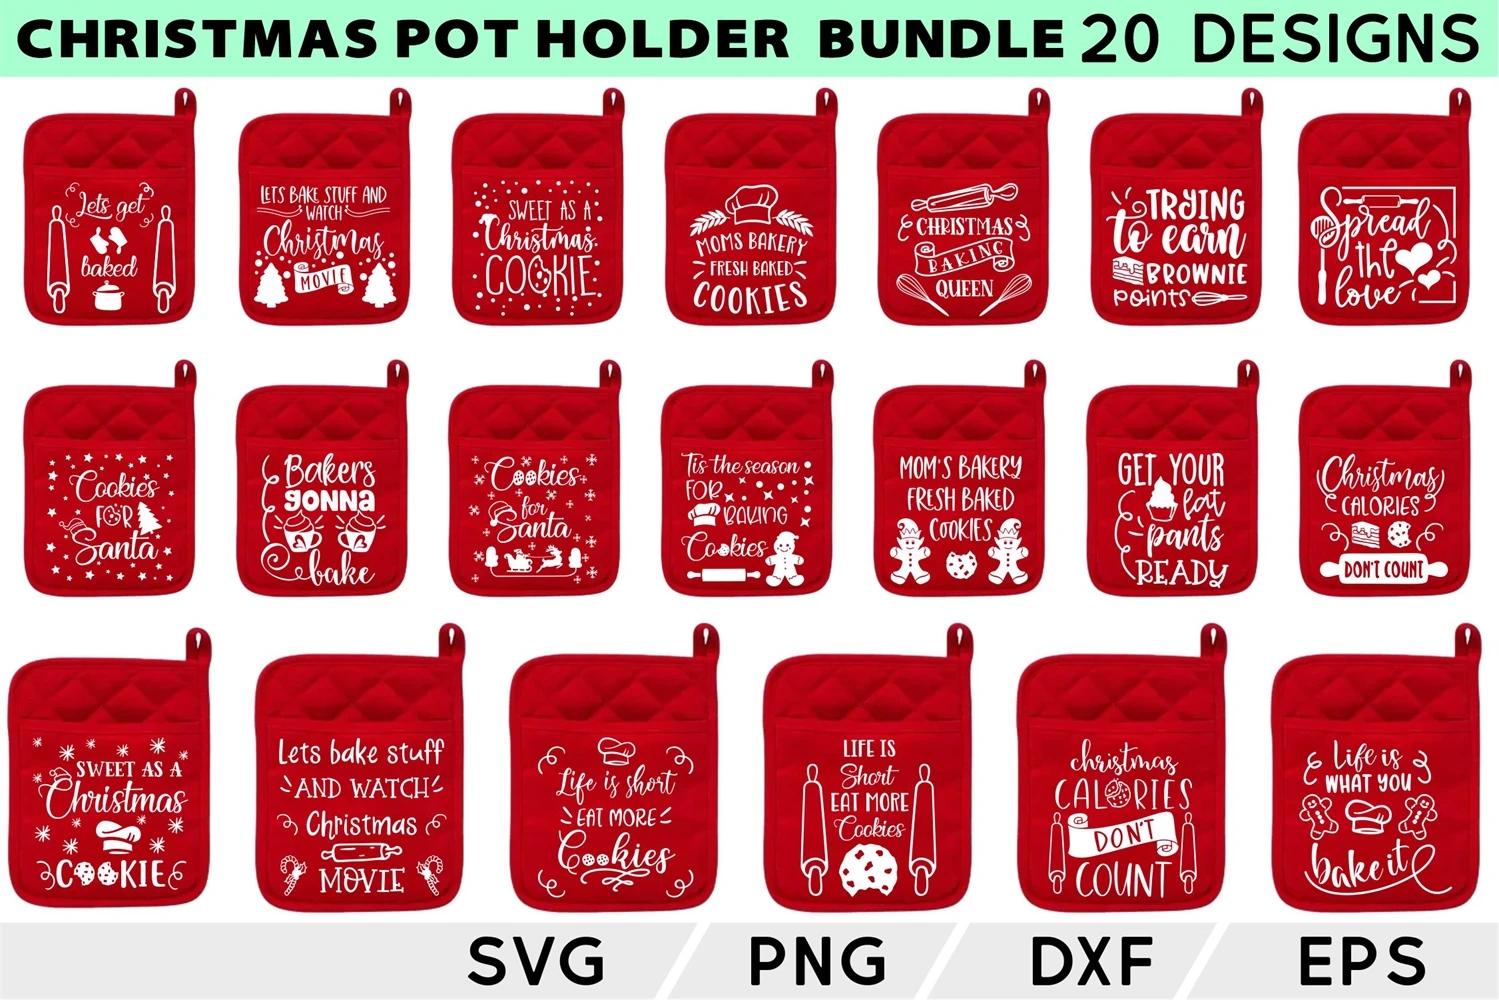 Christmas Pot Holder SVG Bundle